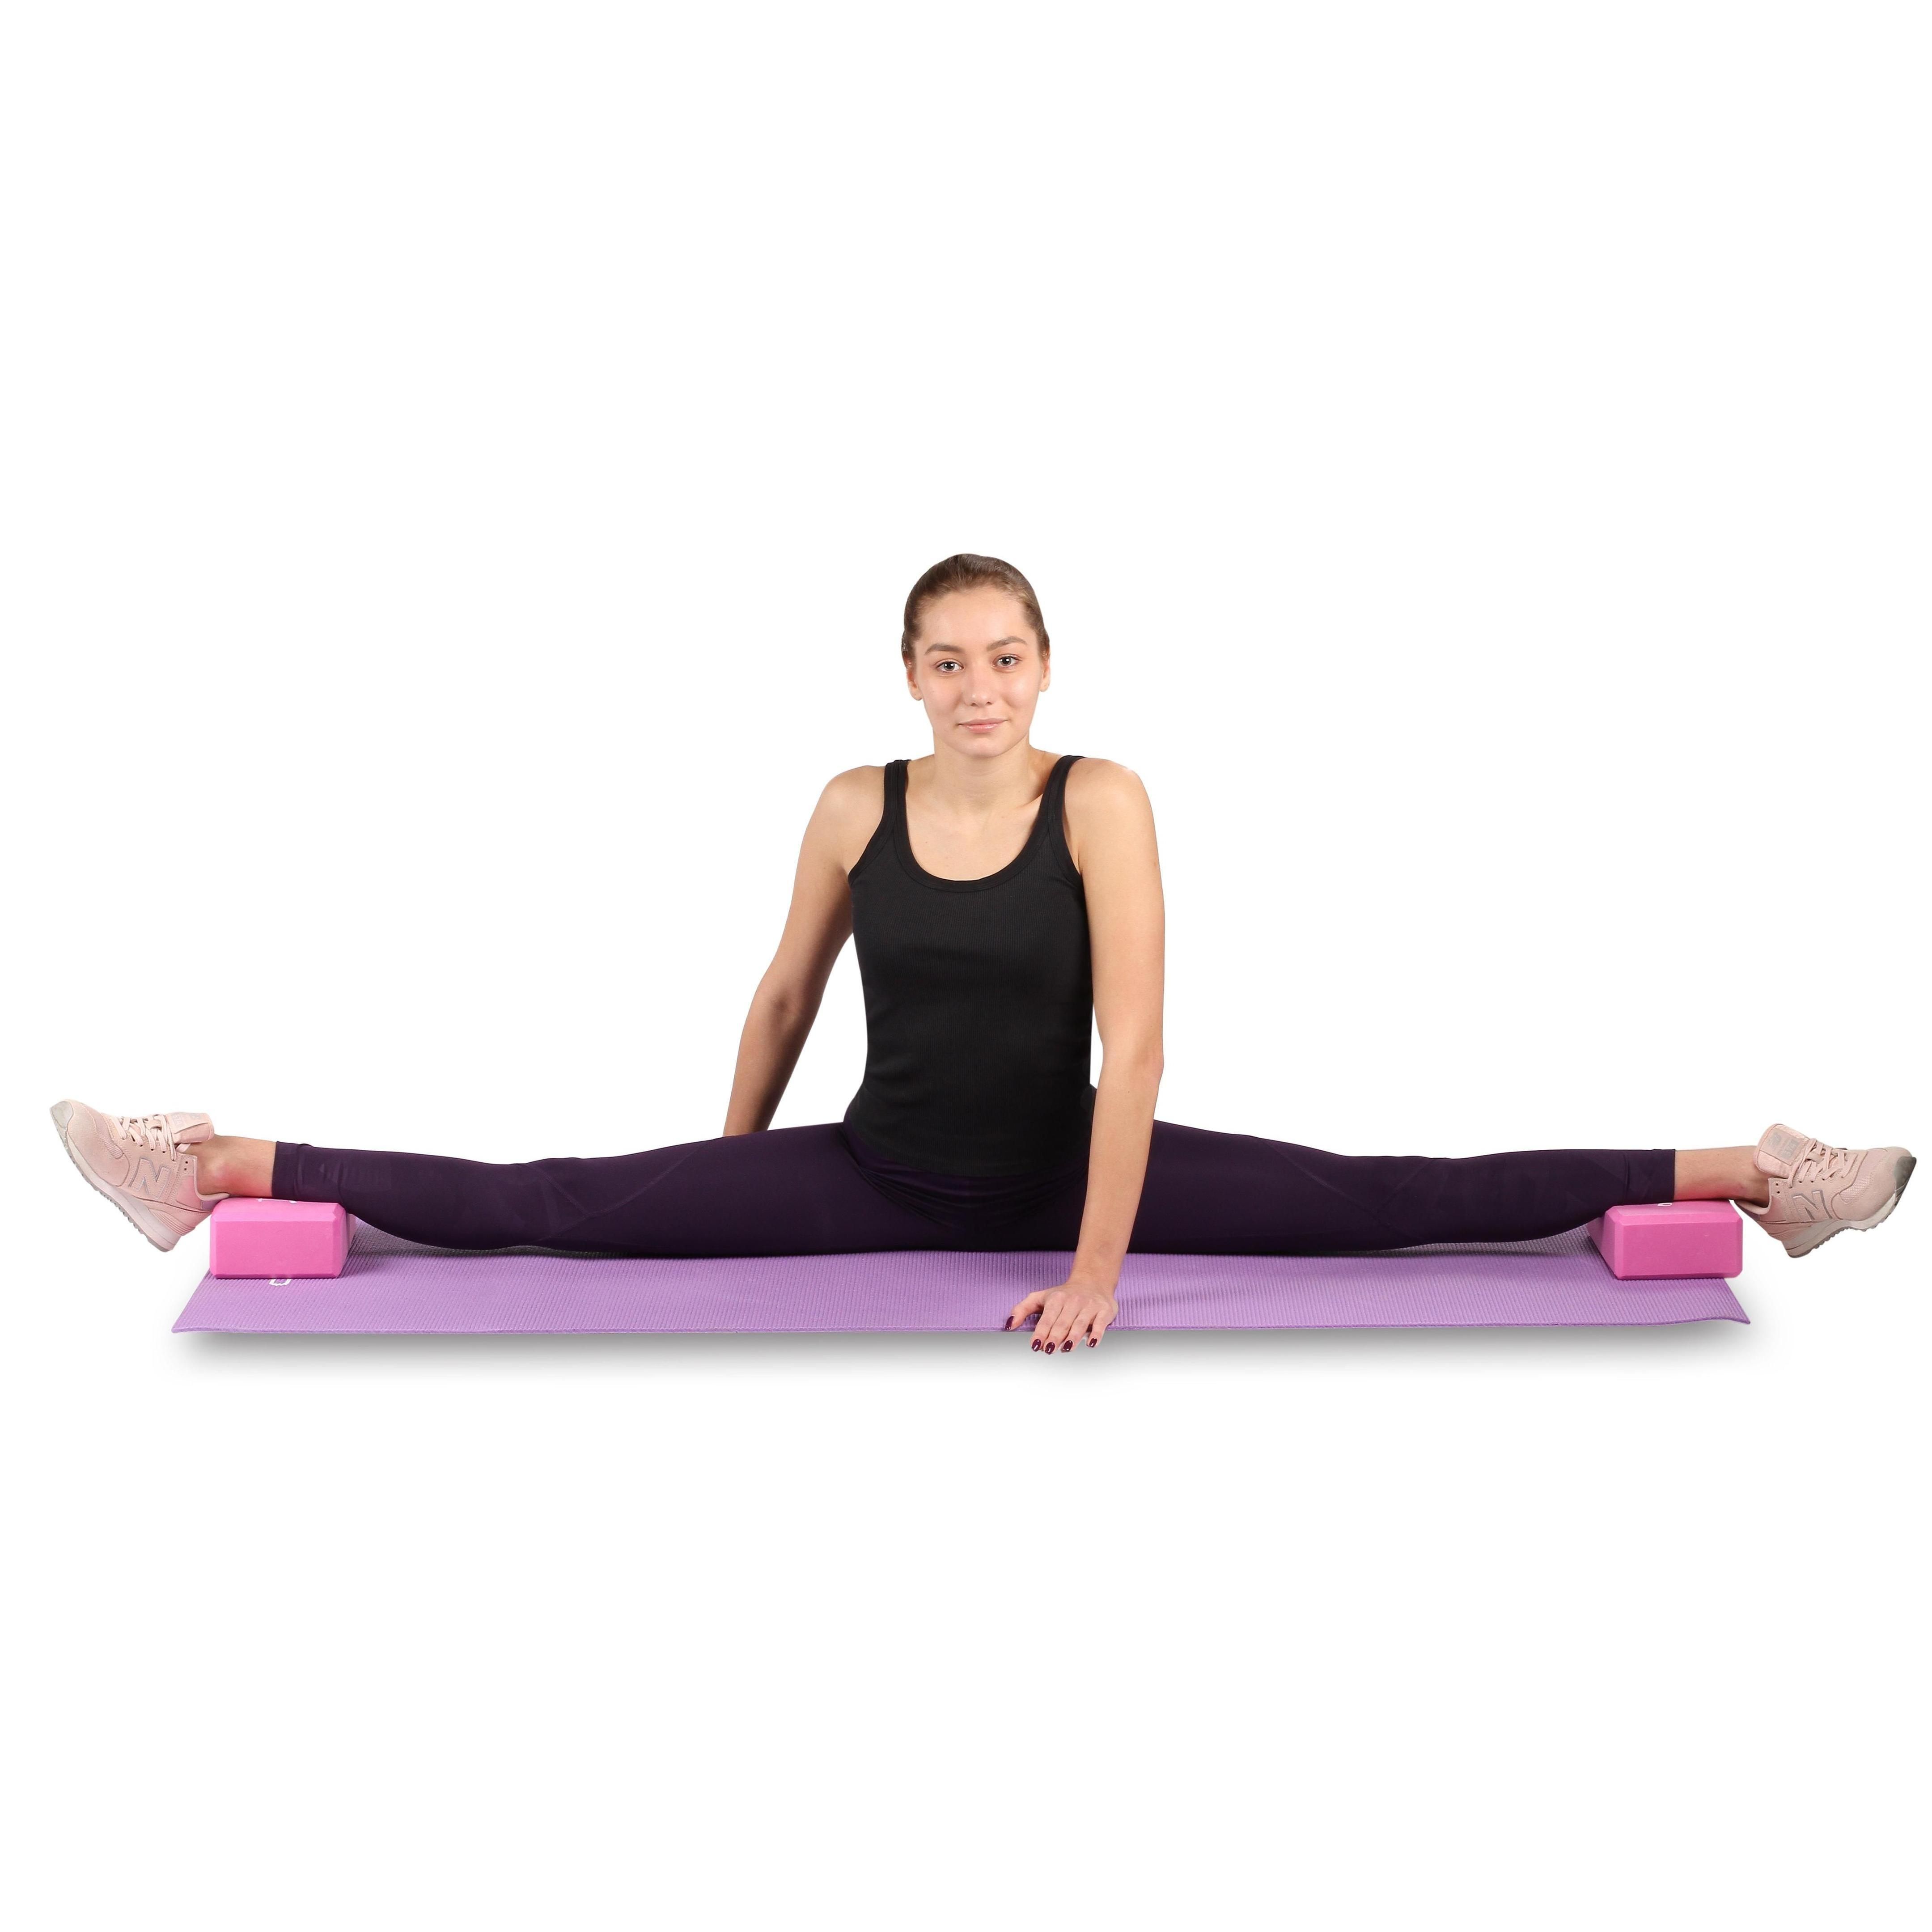 Bloque de Yoga INDIGO 22,8*15,2*7,6 cm Violeta